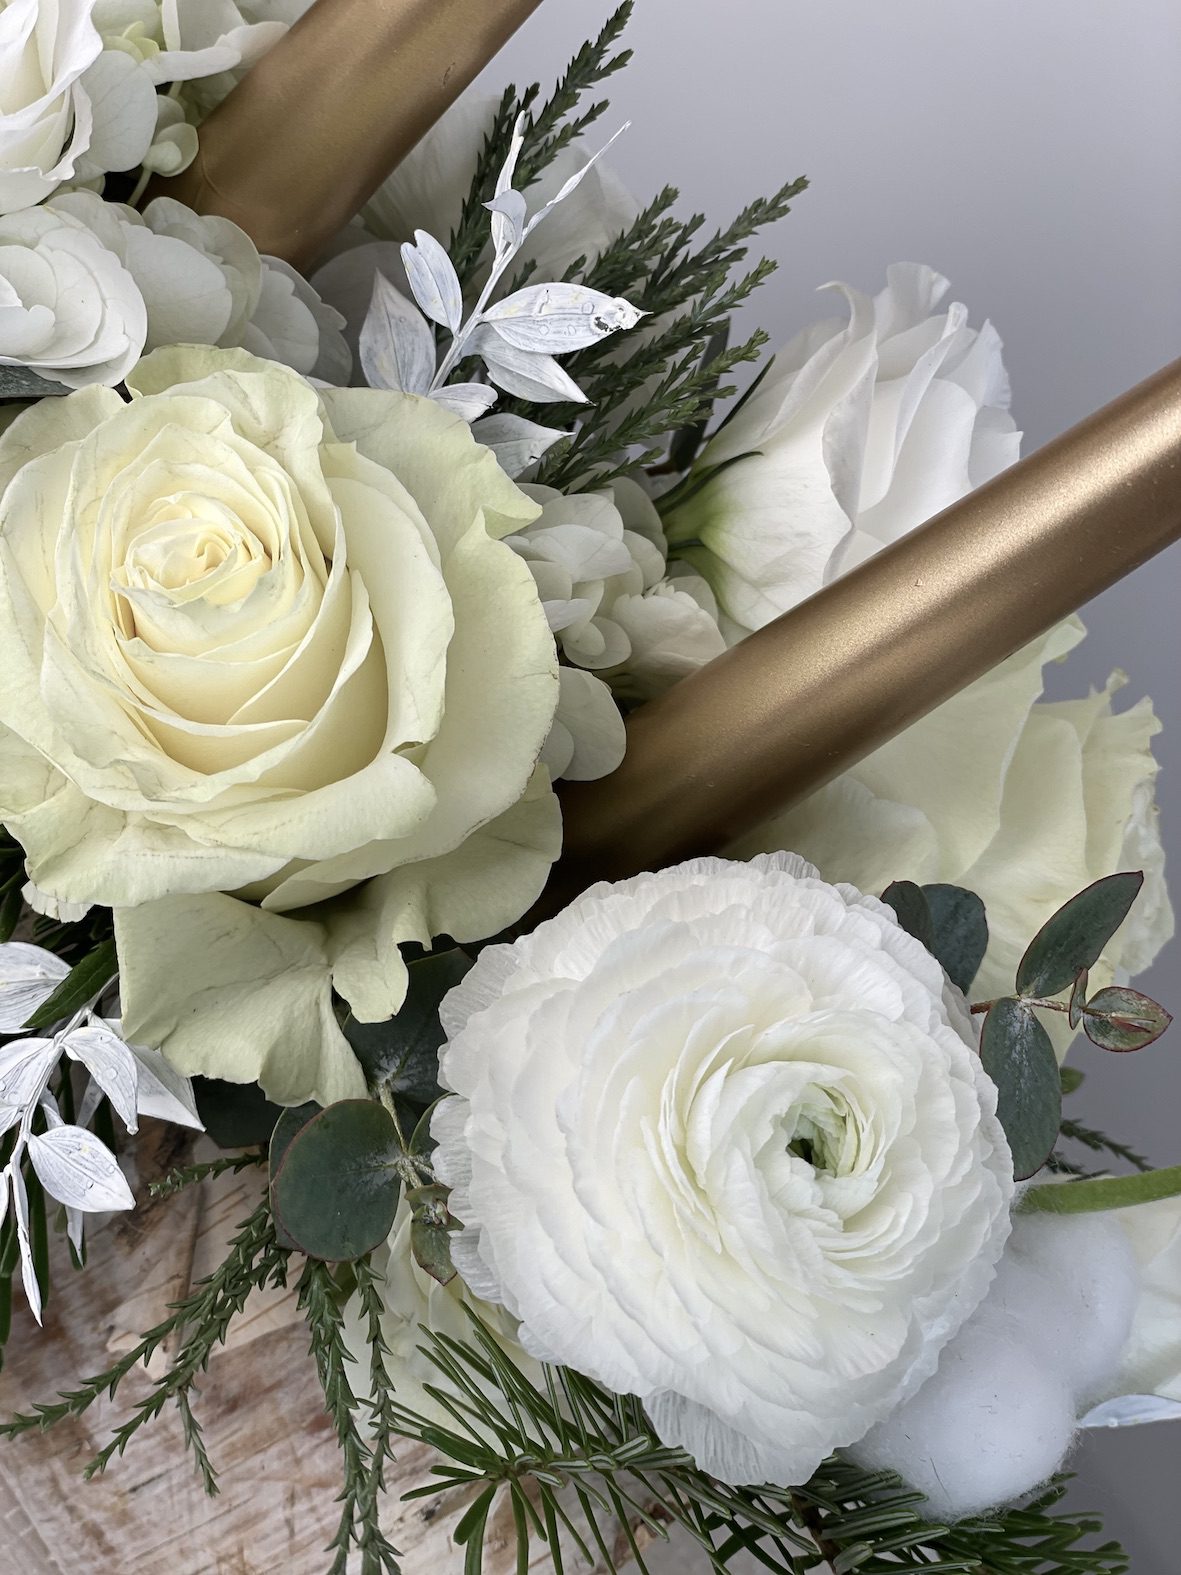 détail bûchette fleurie blanches roses blanches renoncules blanches bougies dorée